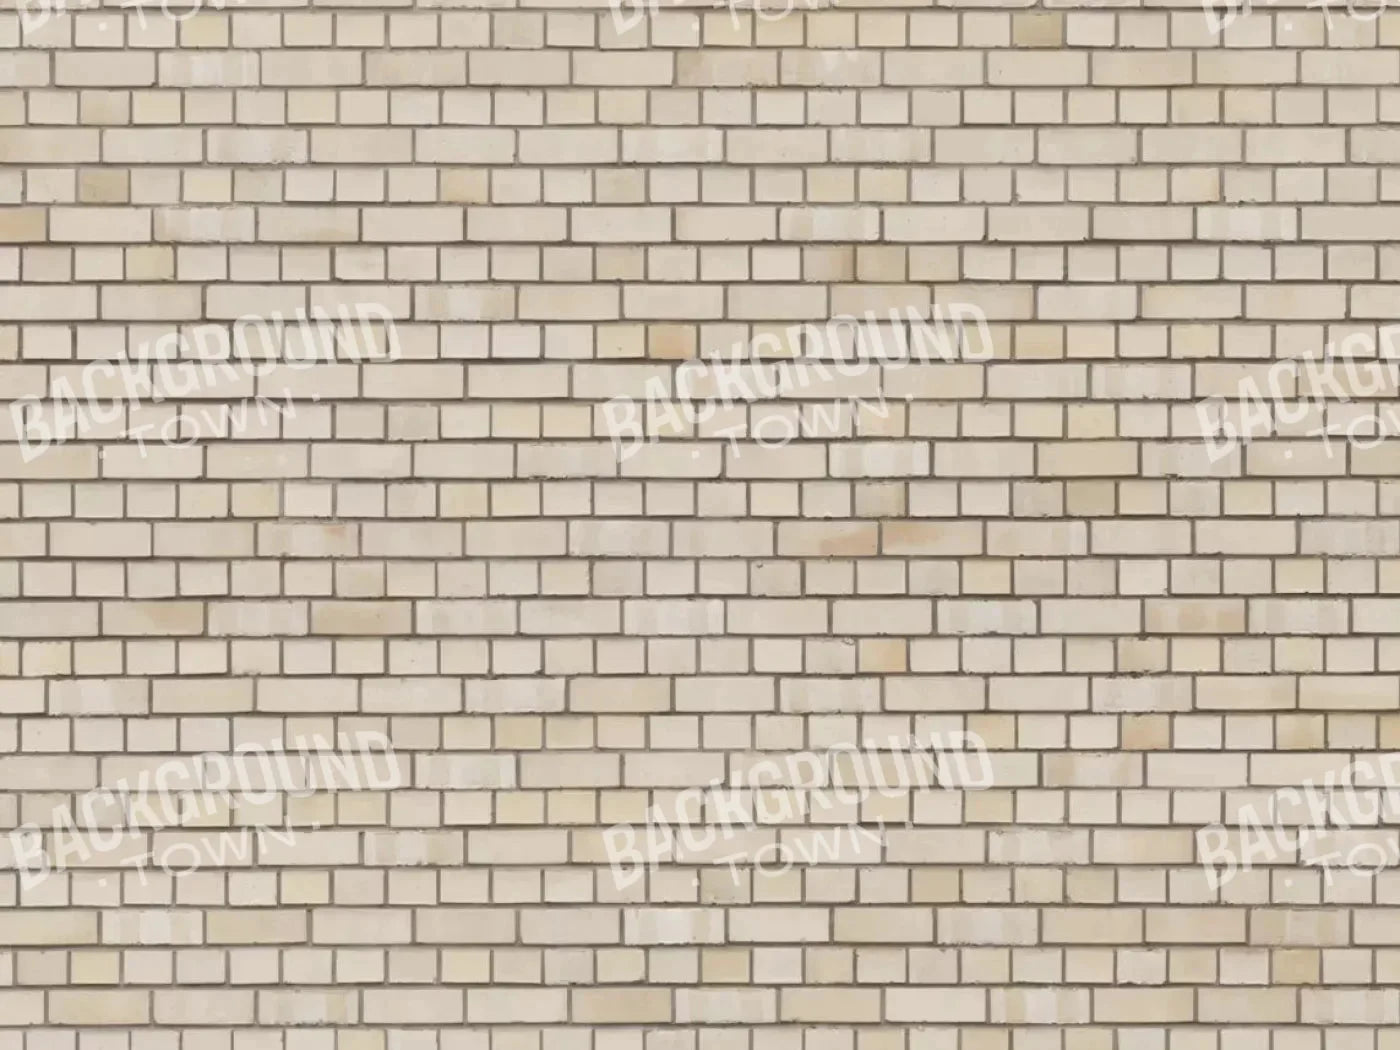 Brickwork Rubbermat Floor 10X8 ( 120 X 96 Inch )